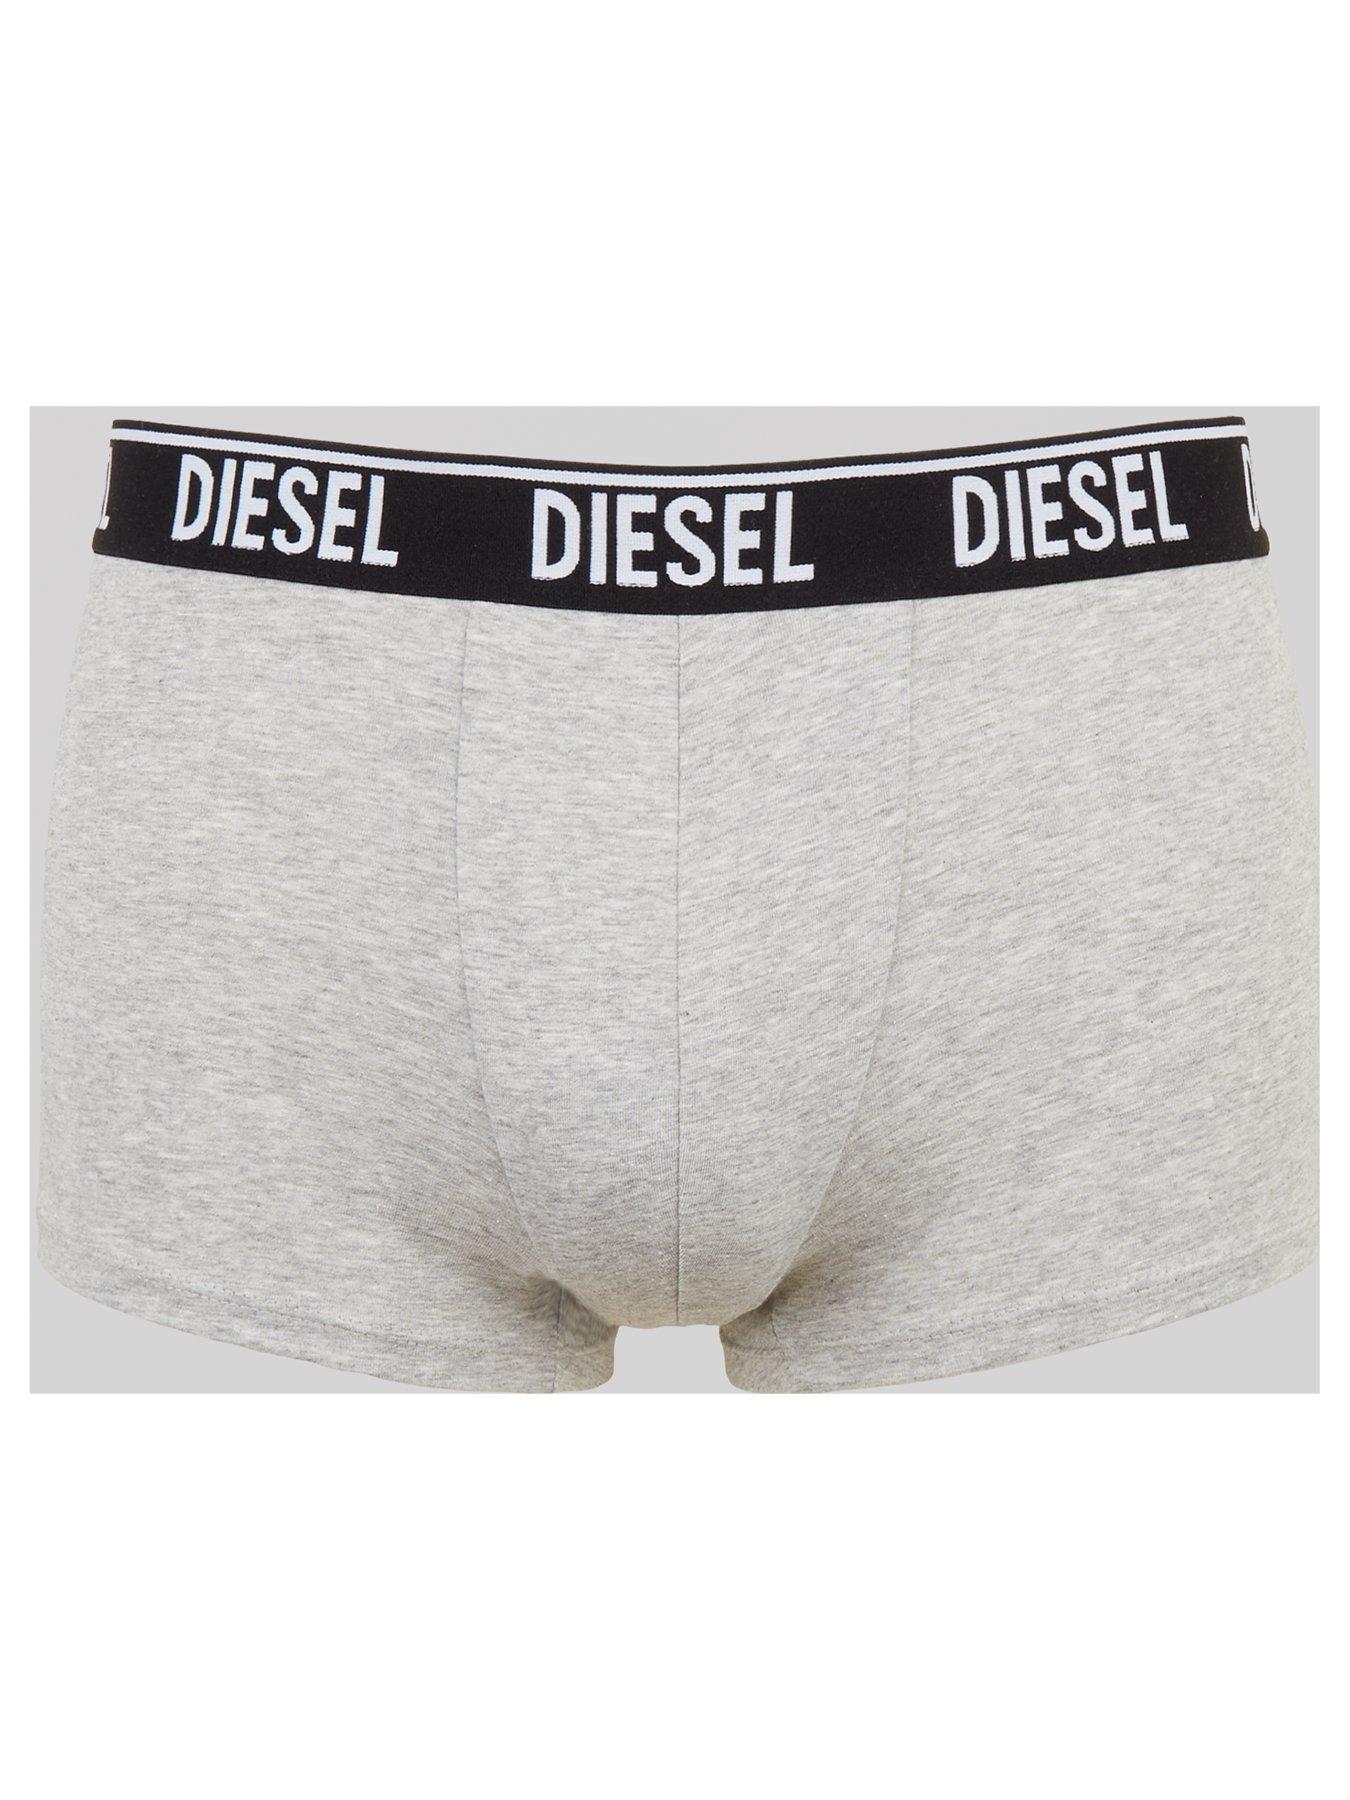 Diesel, Underwear & Socks